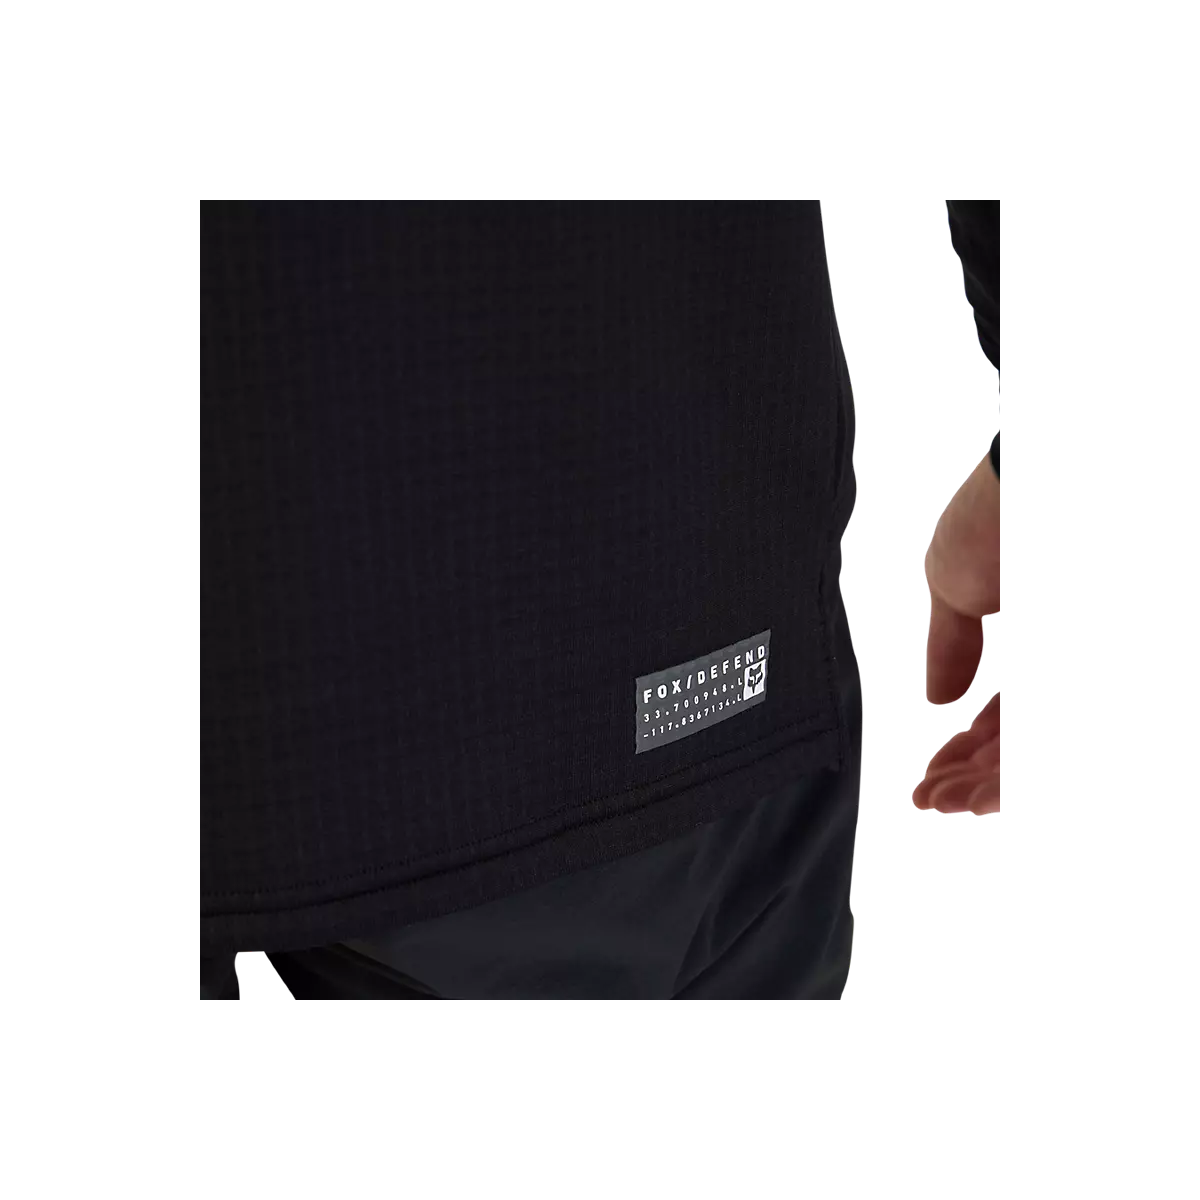 detalle de la Camiseta / Sudadera técnica con capucha Fox Defend Thermal invierno 31480-001 color negro paravientos